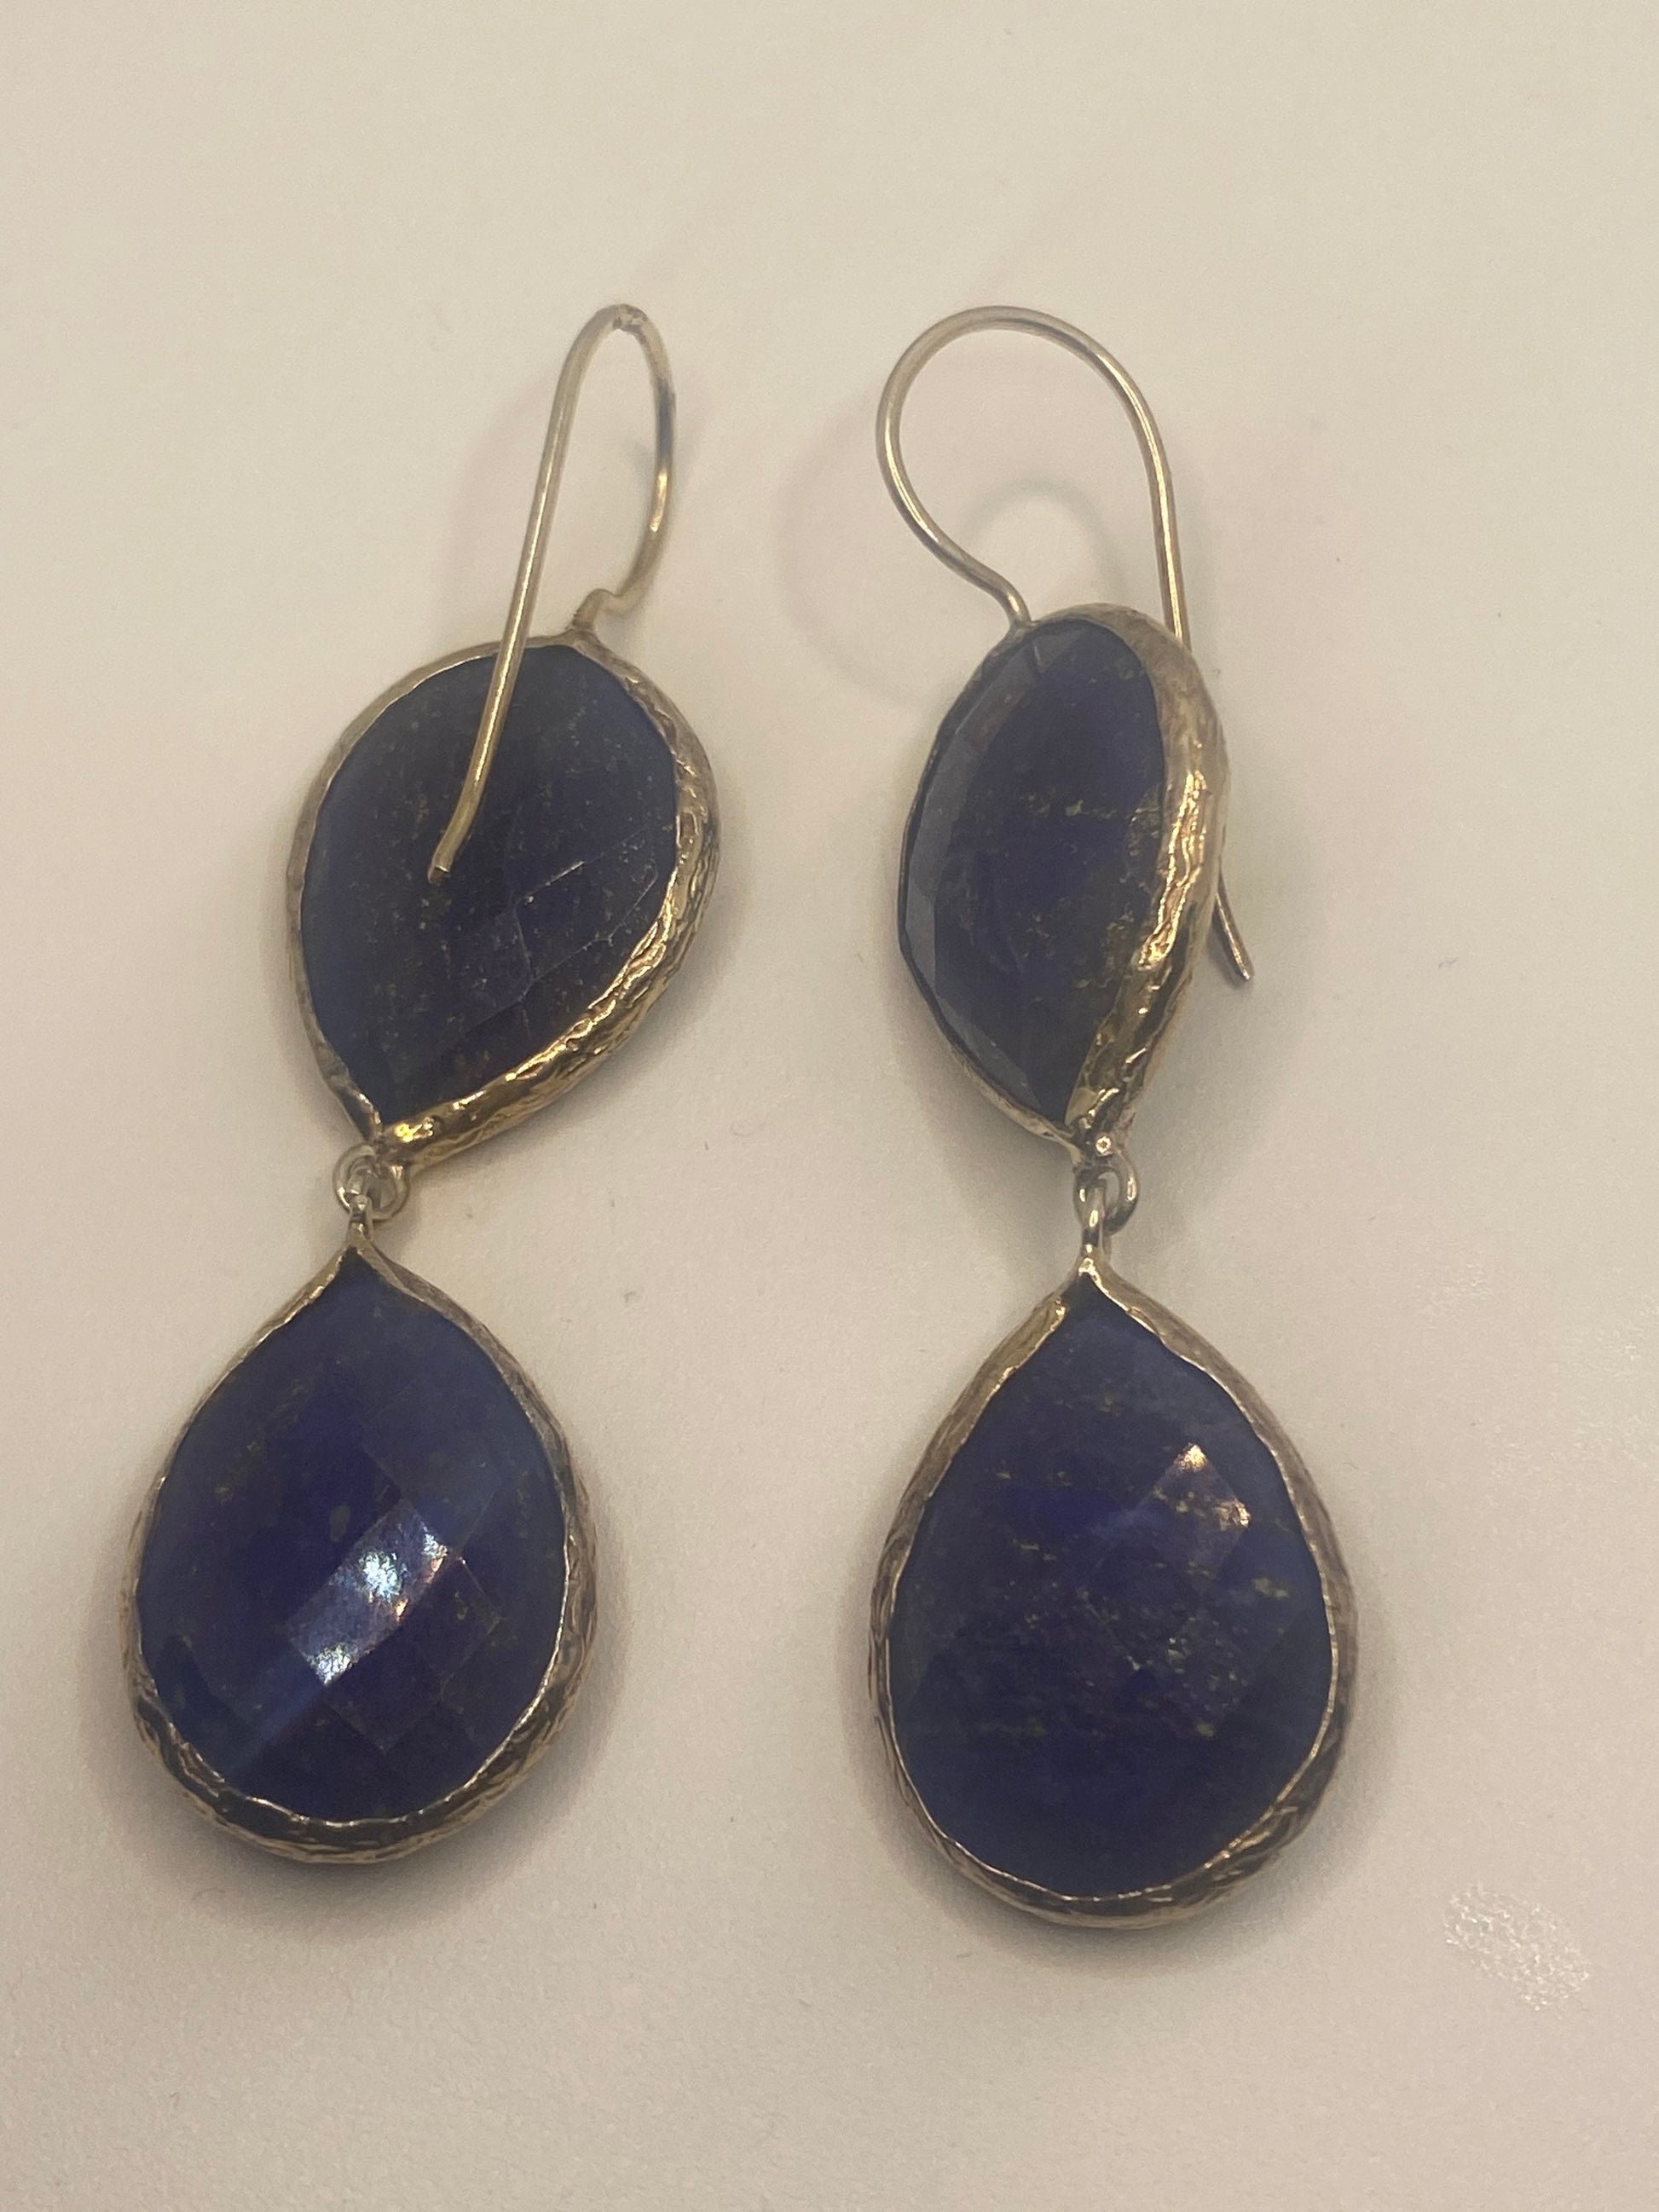 Vintage Blue Lapis Lazuli Earrings Golden 925 Sterling Silver Chandelier Dangle